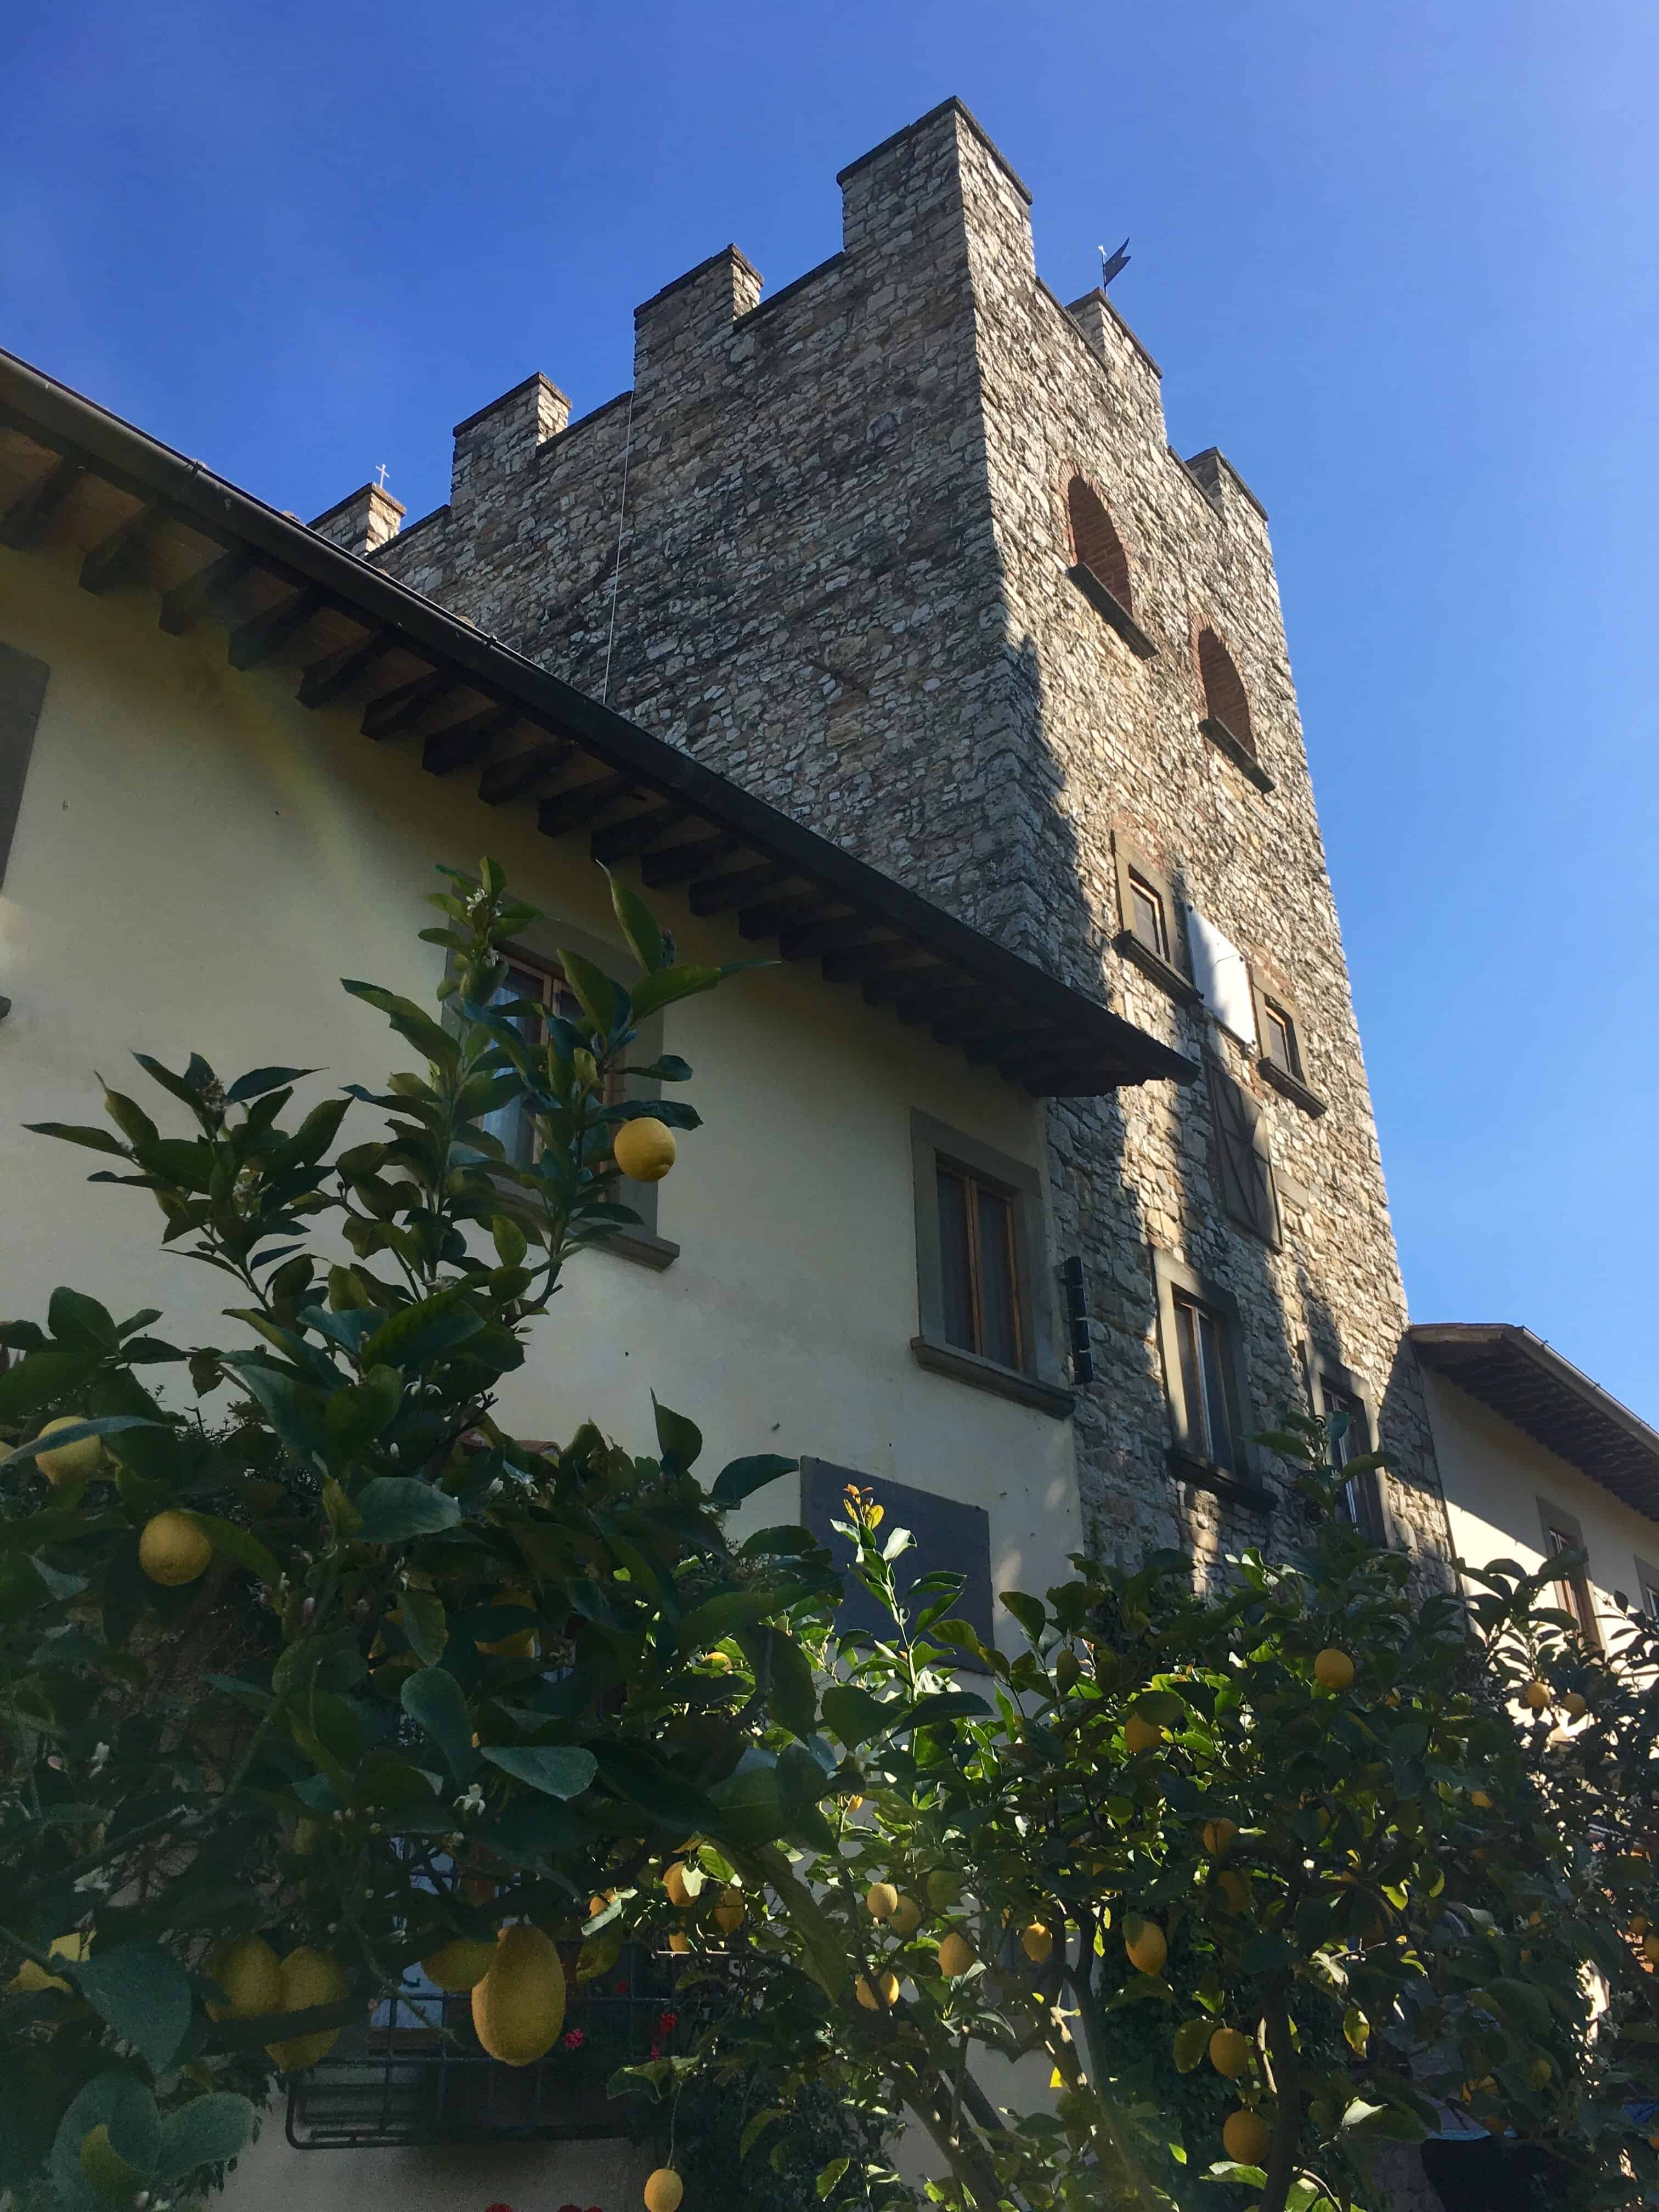 Castello di Verrazzano In Chianti, Italy